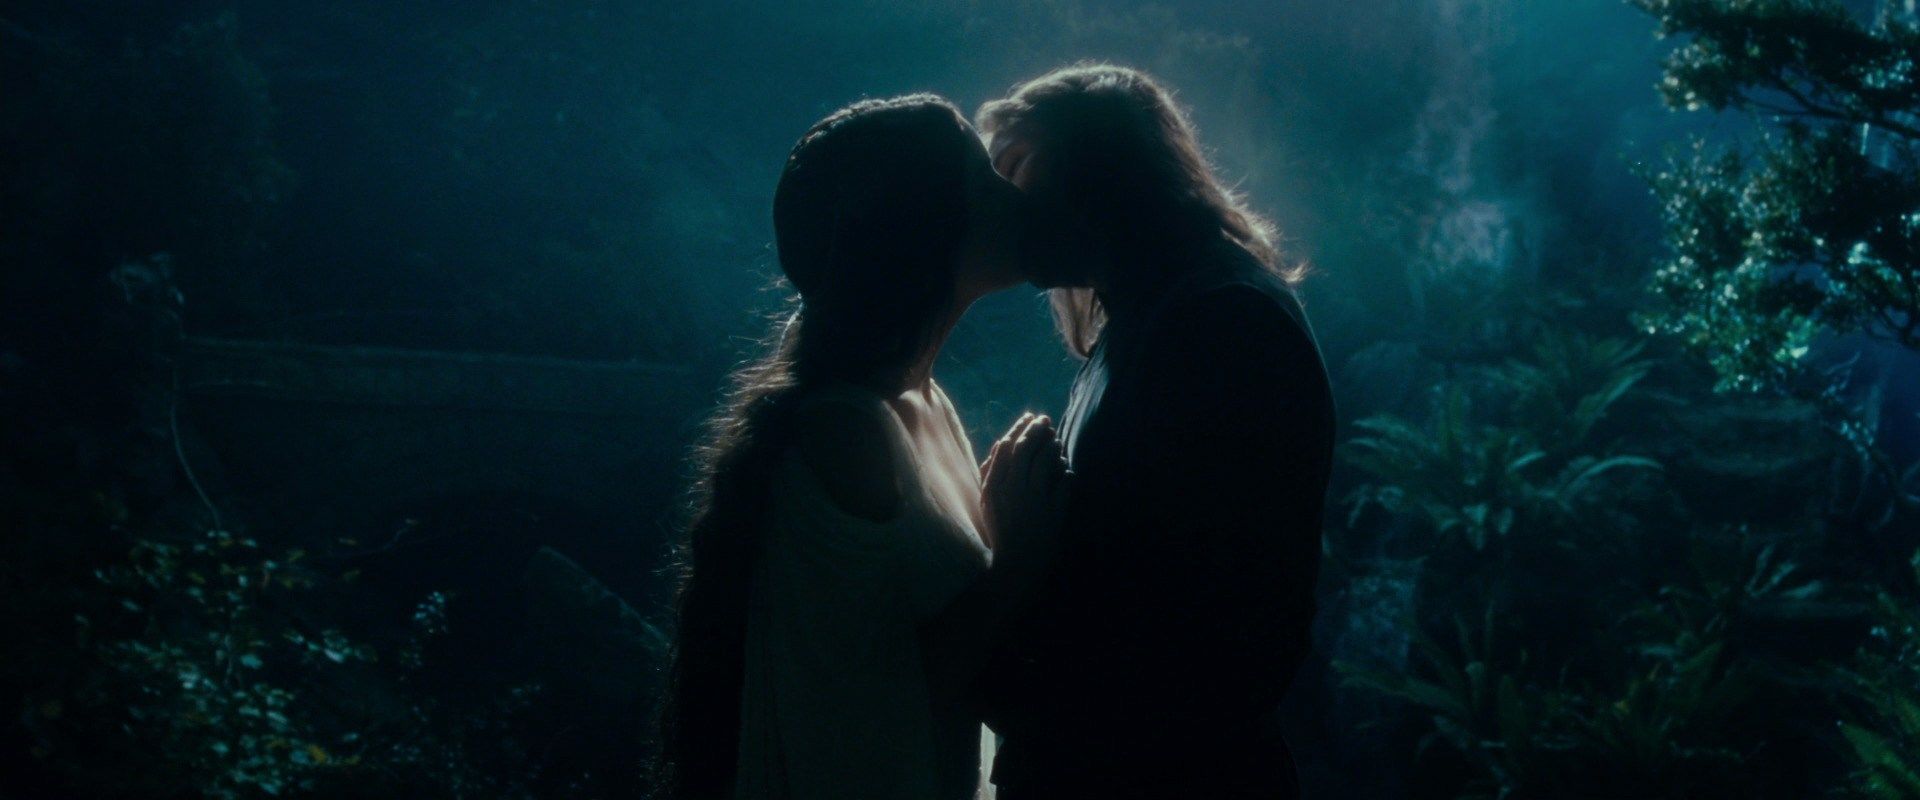 Arwen Aragorn Kiss